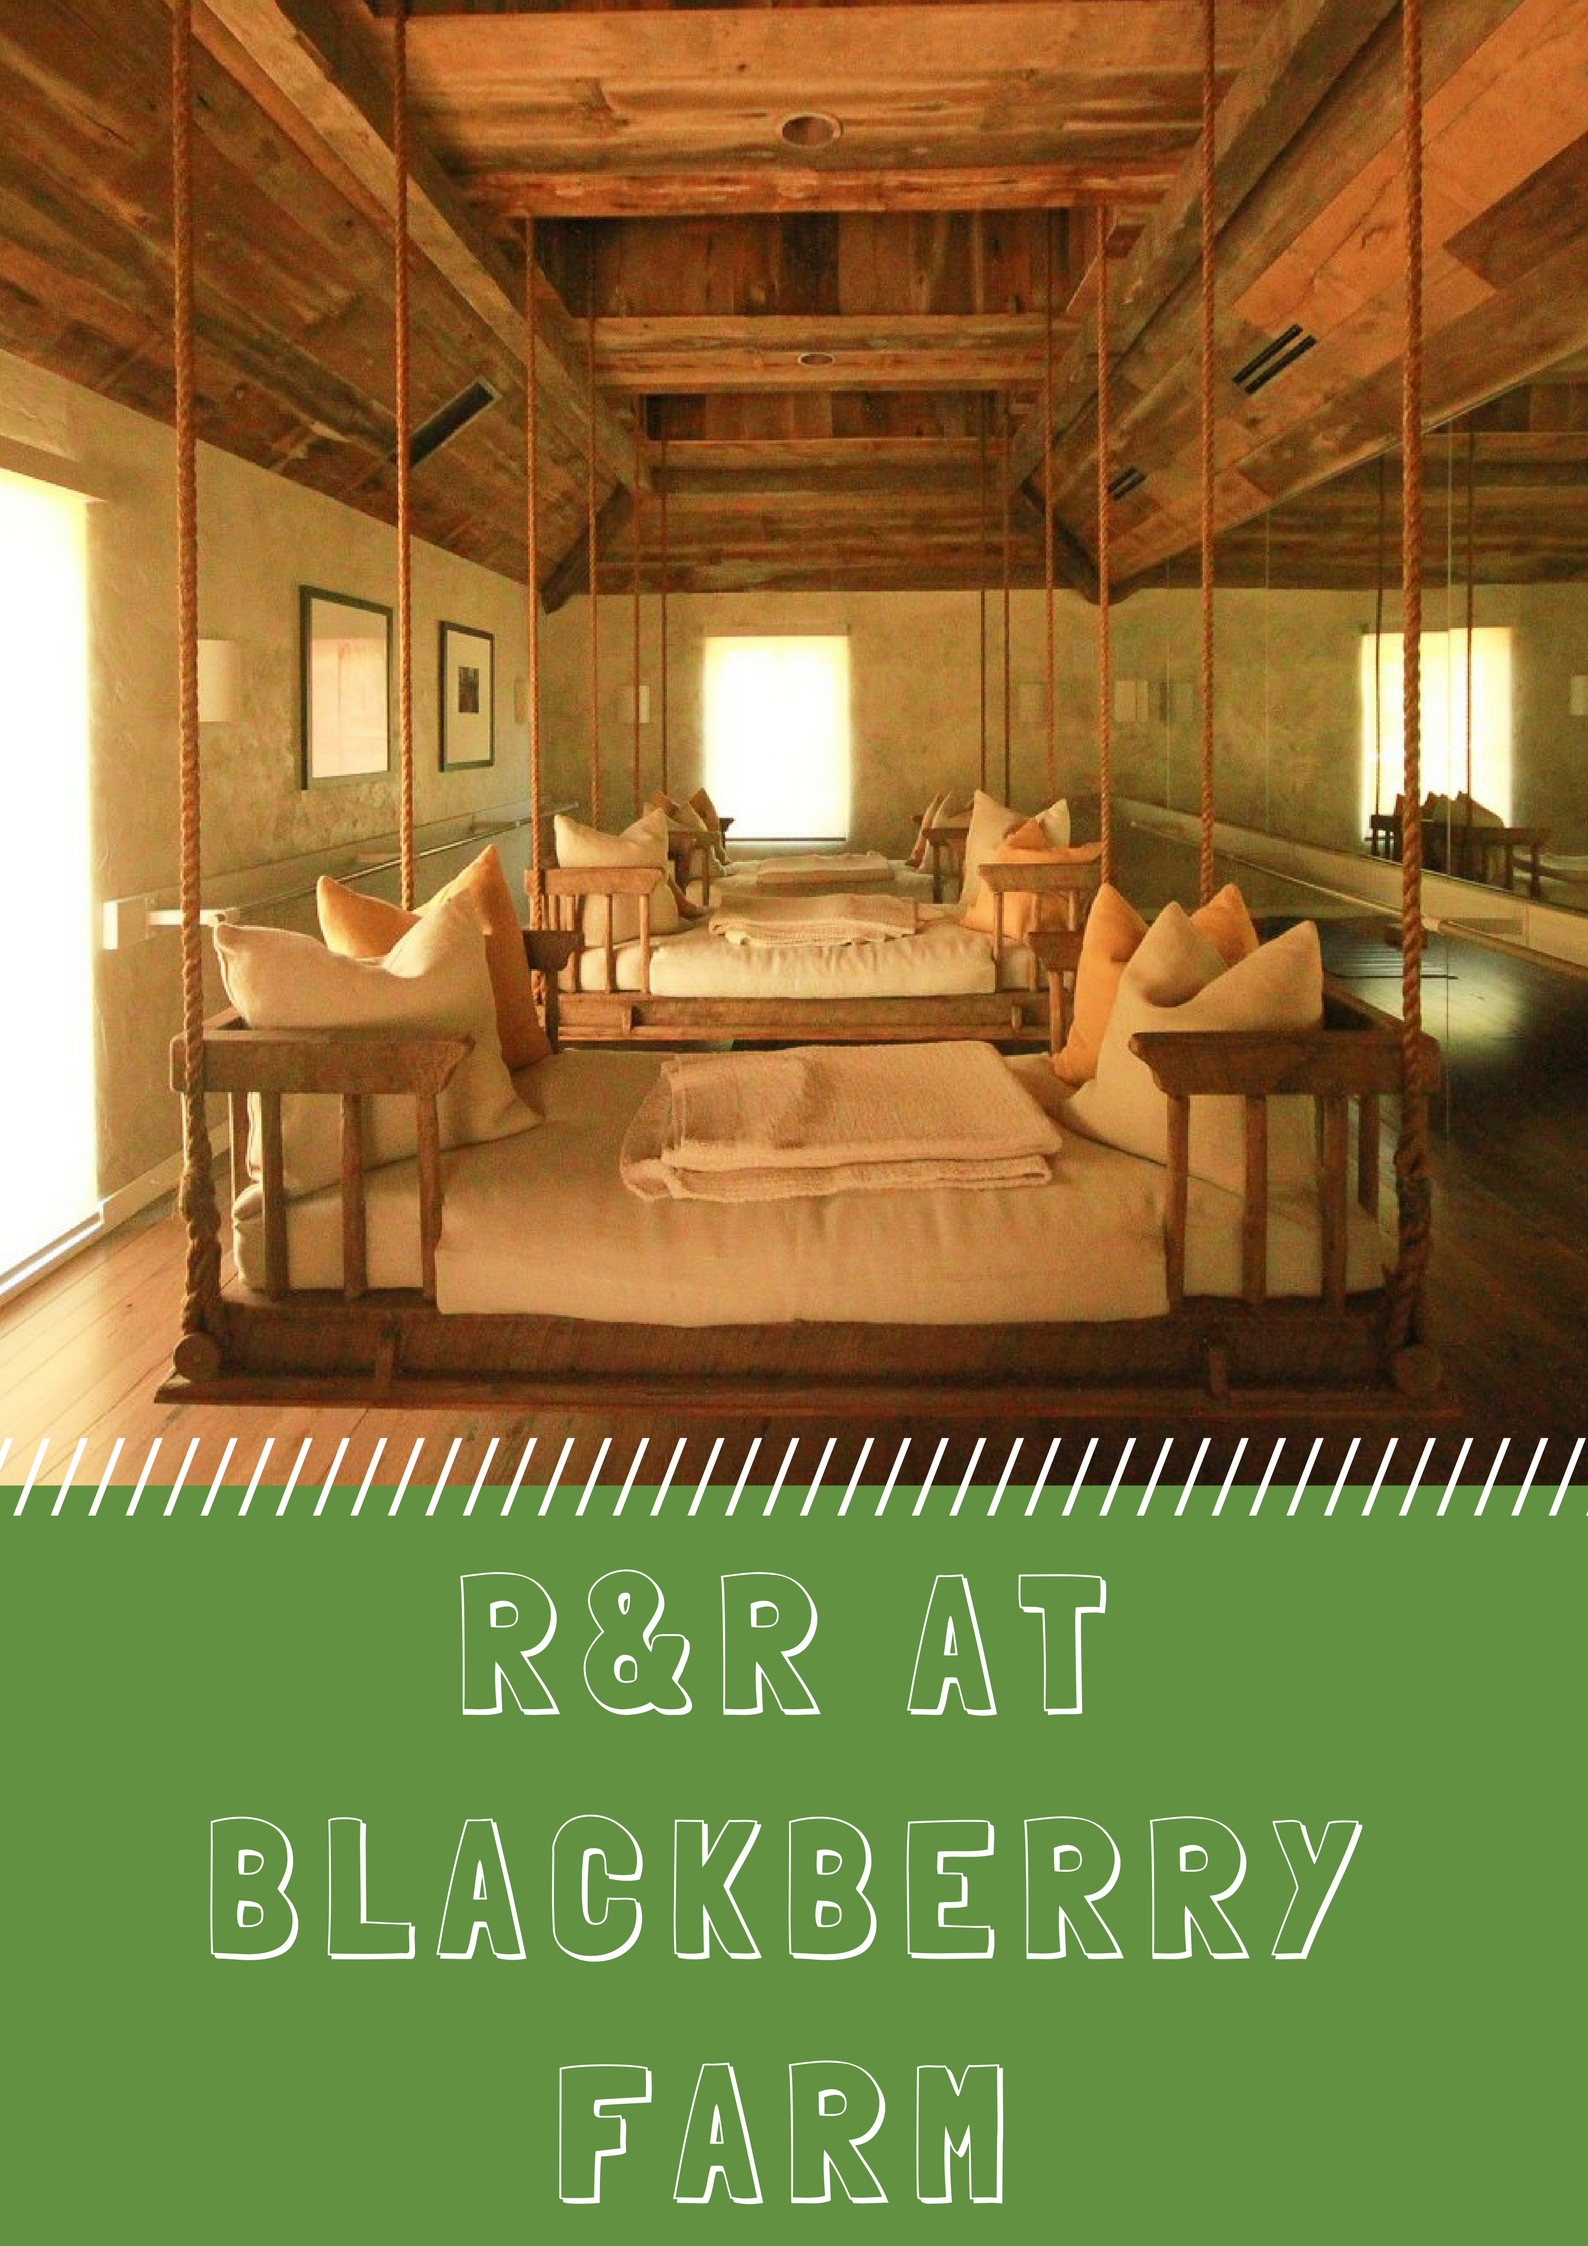 Tennessee Weekend Getaway: Steal Away to Blackberry Farm